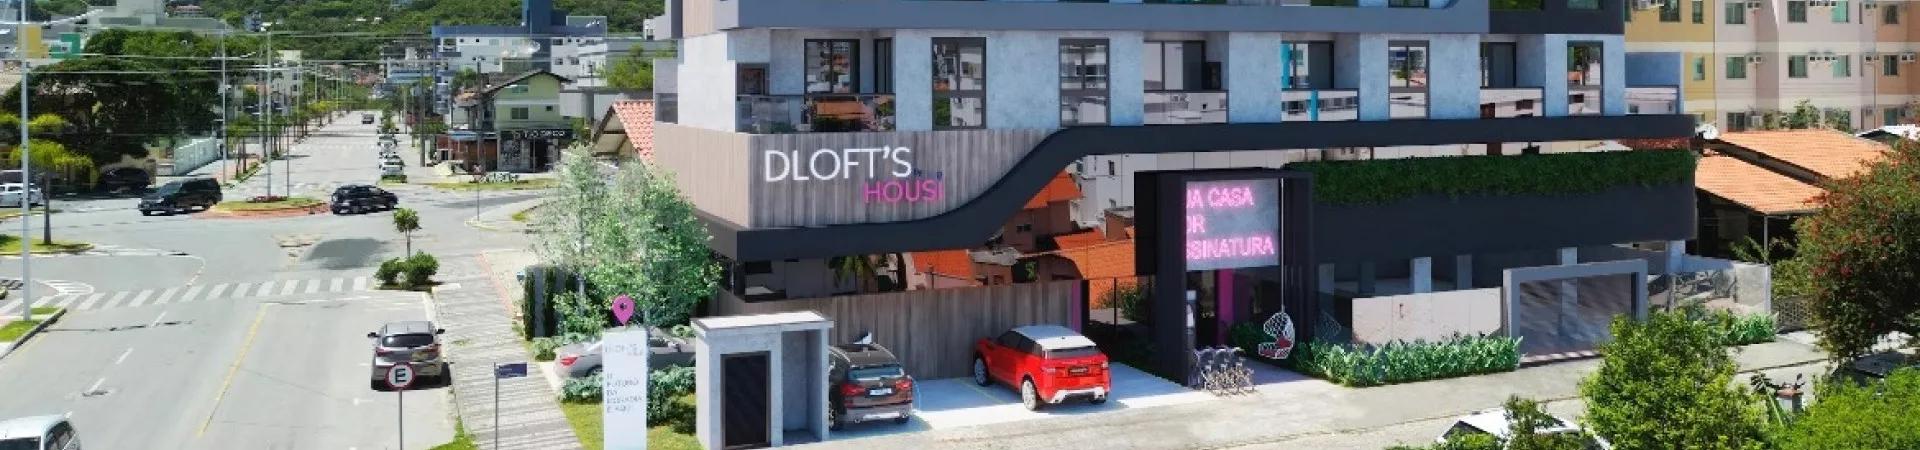 Fachada do Dloft's by Housi, da ProvisãoD, Bombinhas - SC